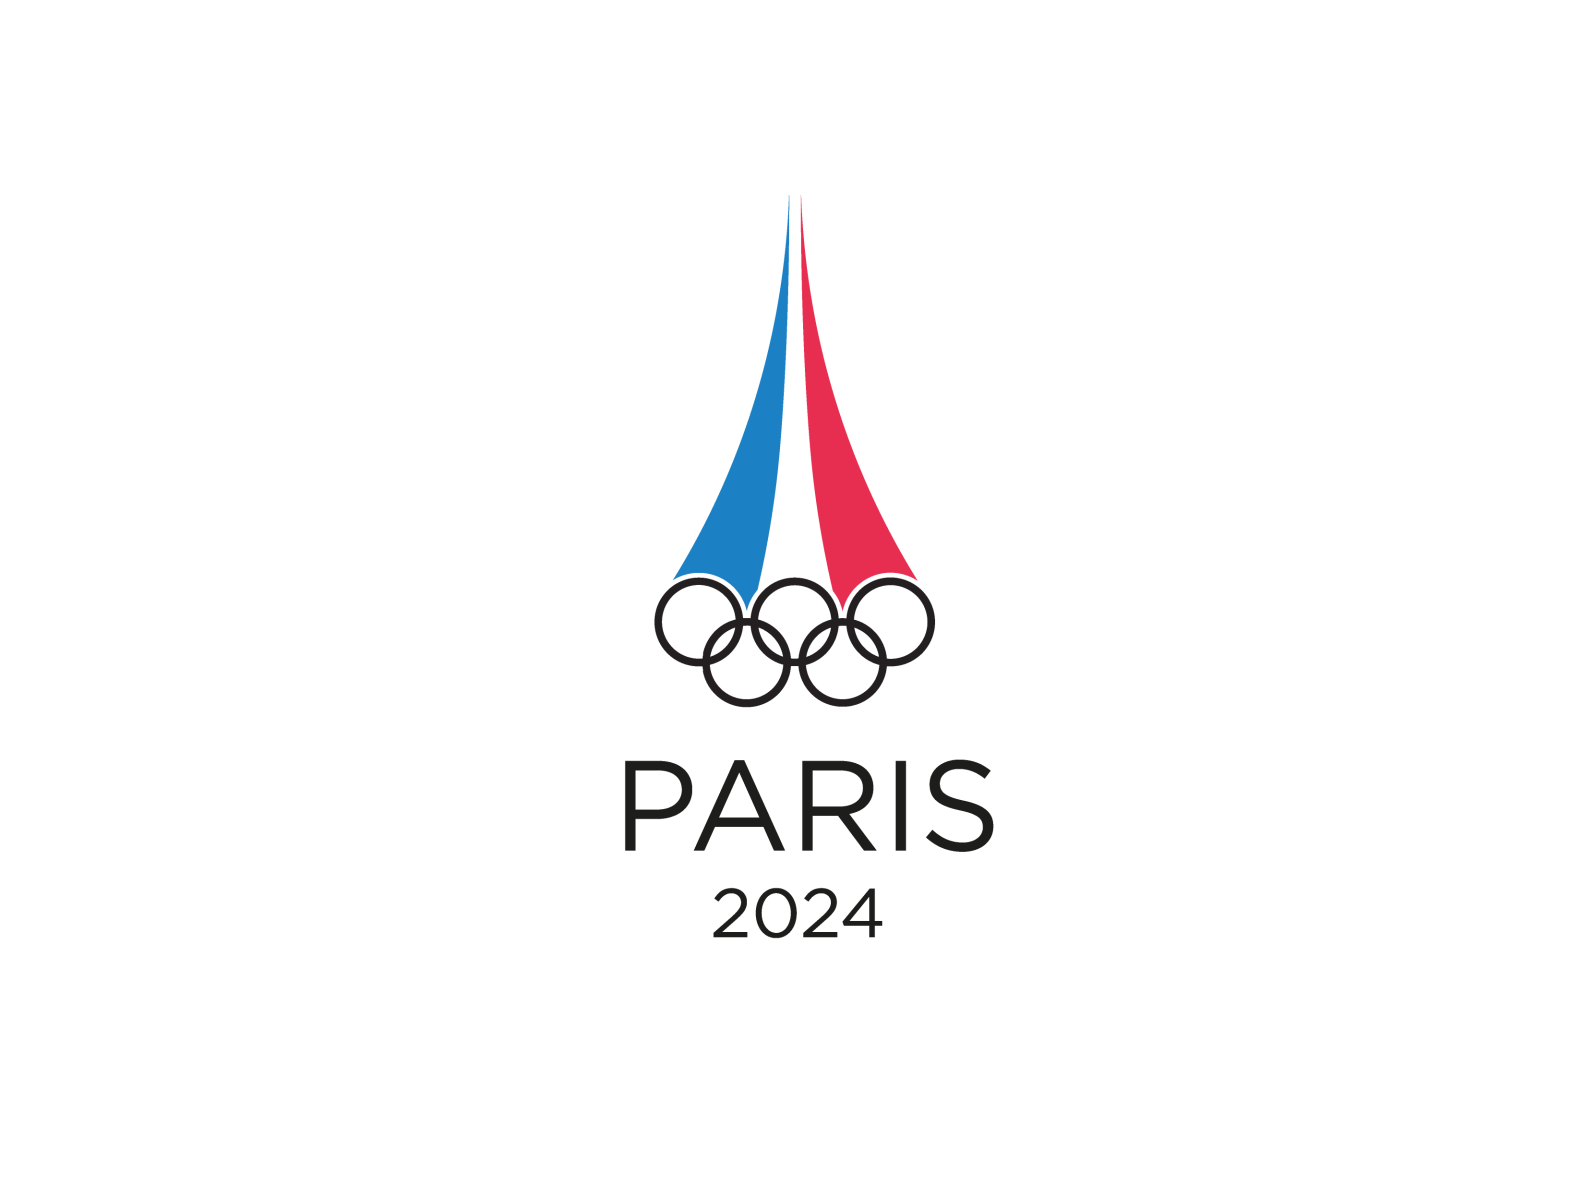 Олимпийские игры в Париже 2024. Paris 2024 логотип. Paris 2024 Olympics logo.